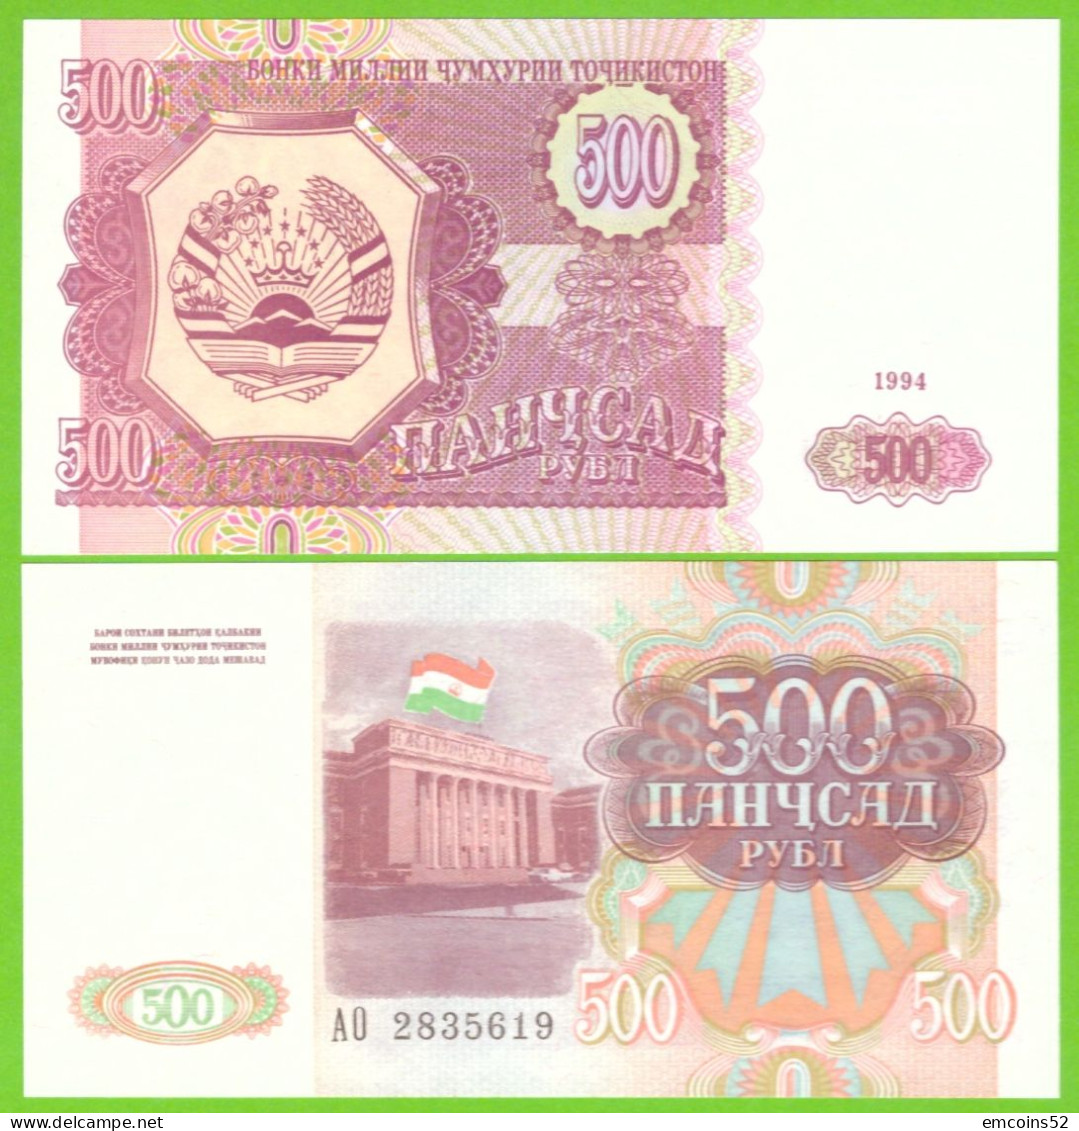 TAJIKISTAN 500 RUBL 1994 P-8 UNC - Tajikistan